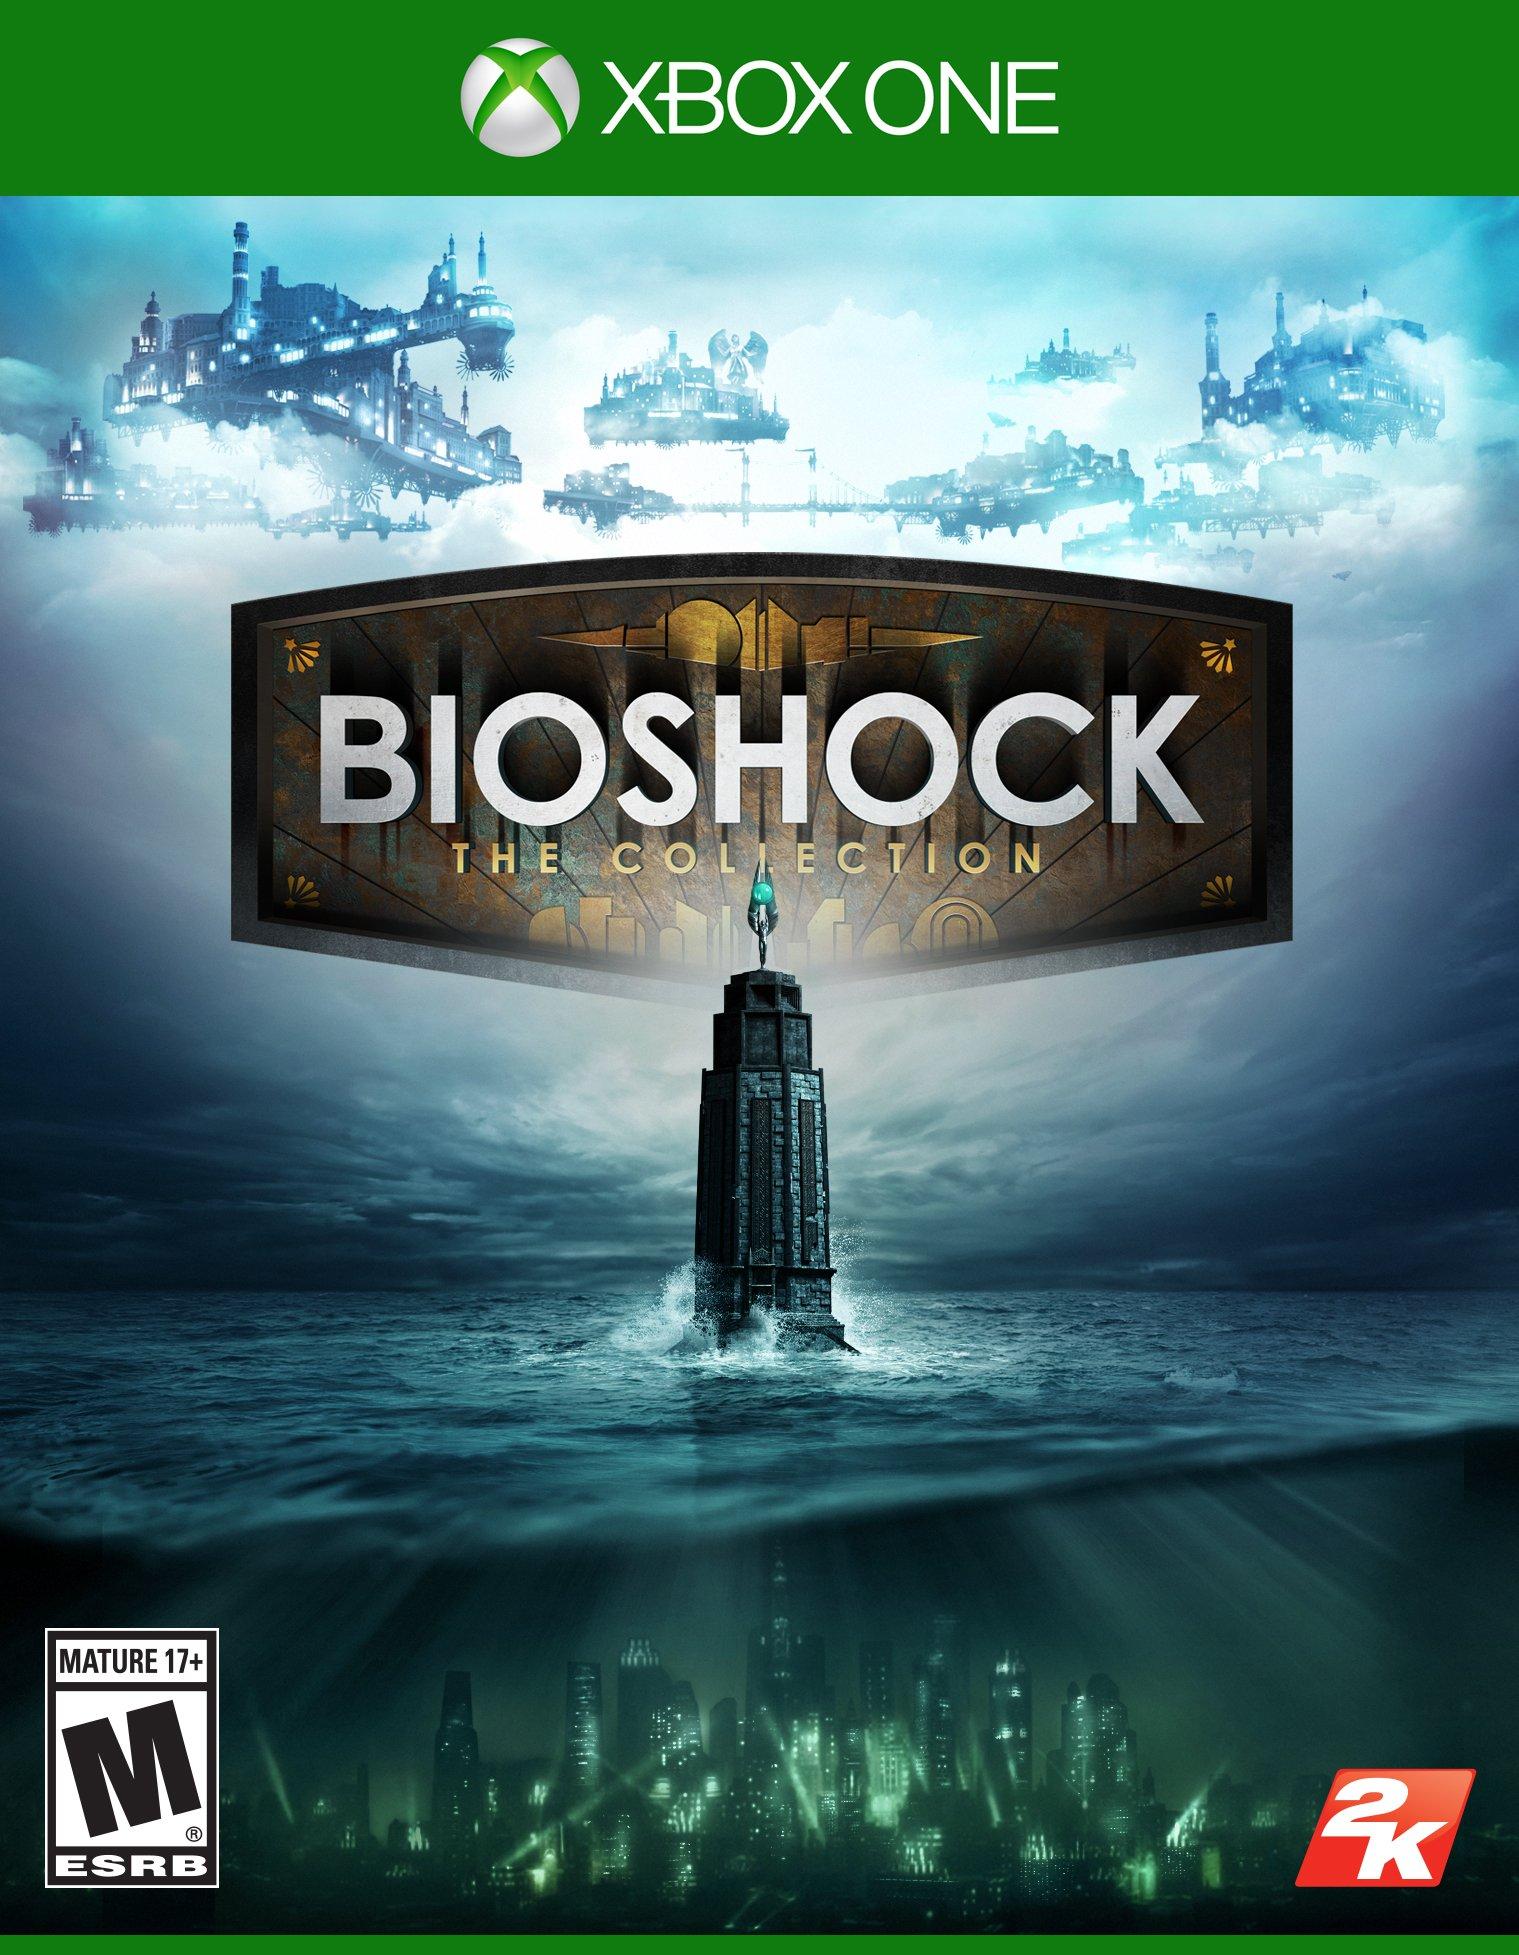 BioShock Infinite  Top 10 Video Games We're Looking Forward To in